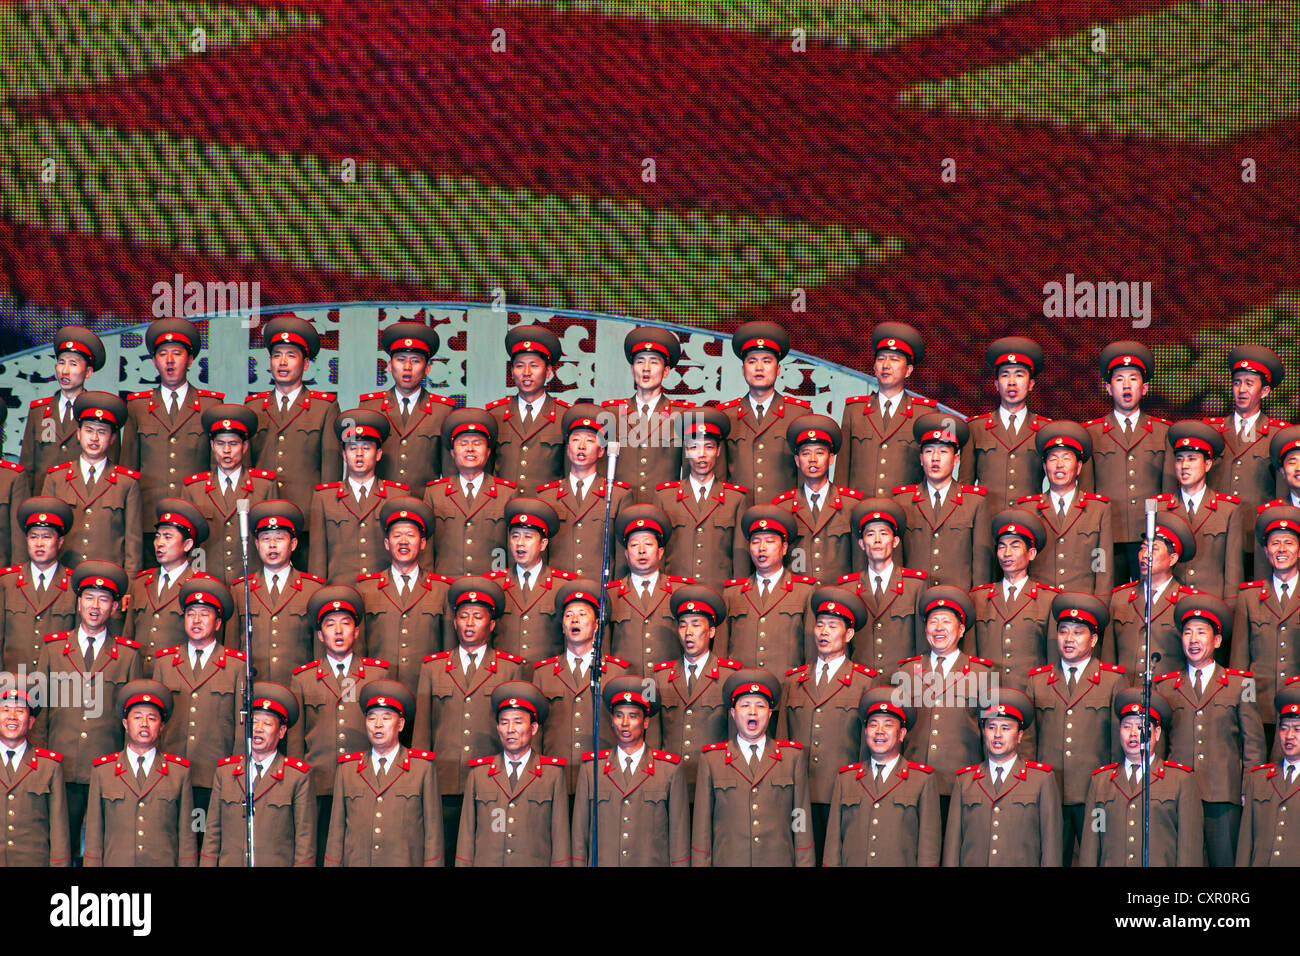 Democratic Peoples's Republic of Korea (DPRK), North Korea, Pyongyang, Pyongyang Indoor Stadium performance Stock Photo